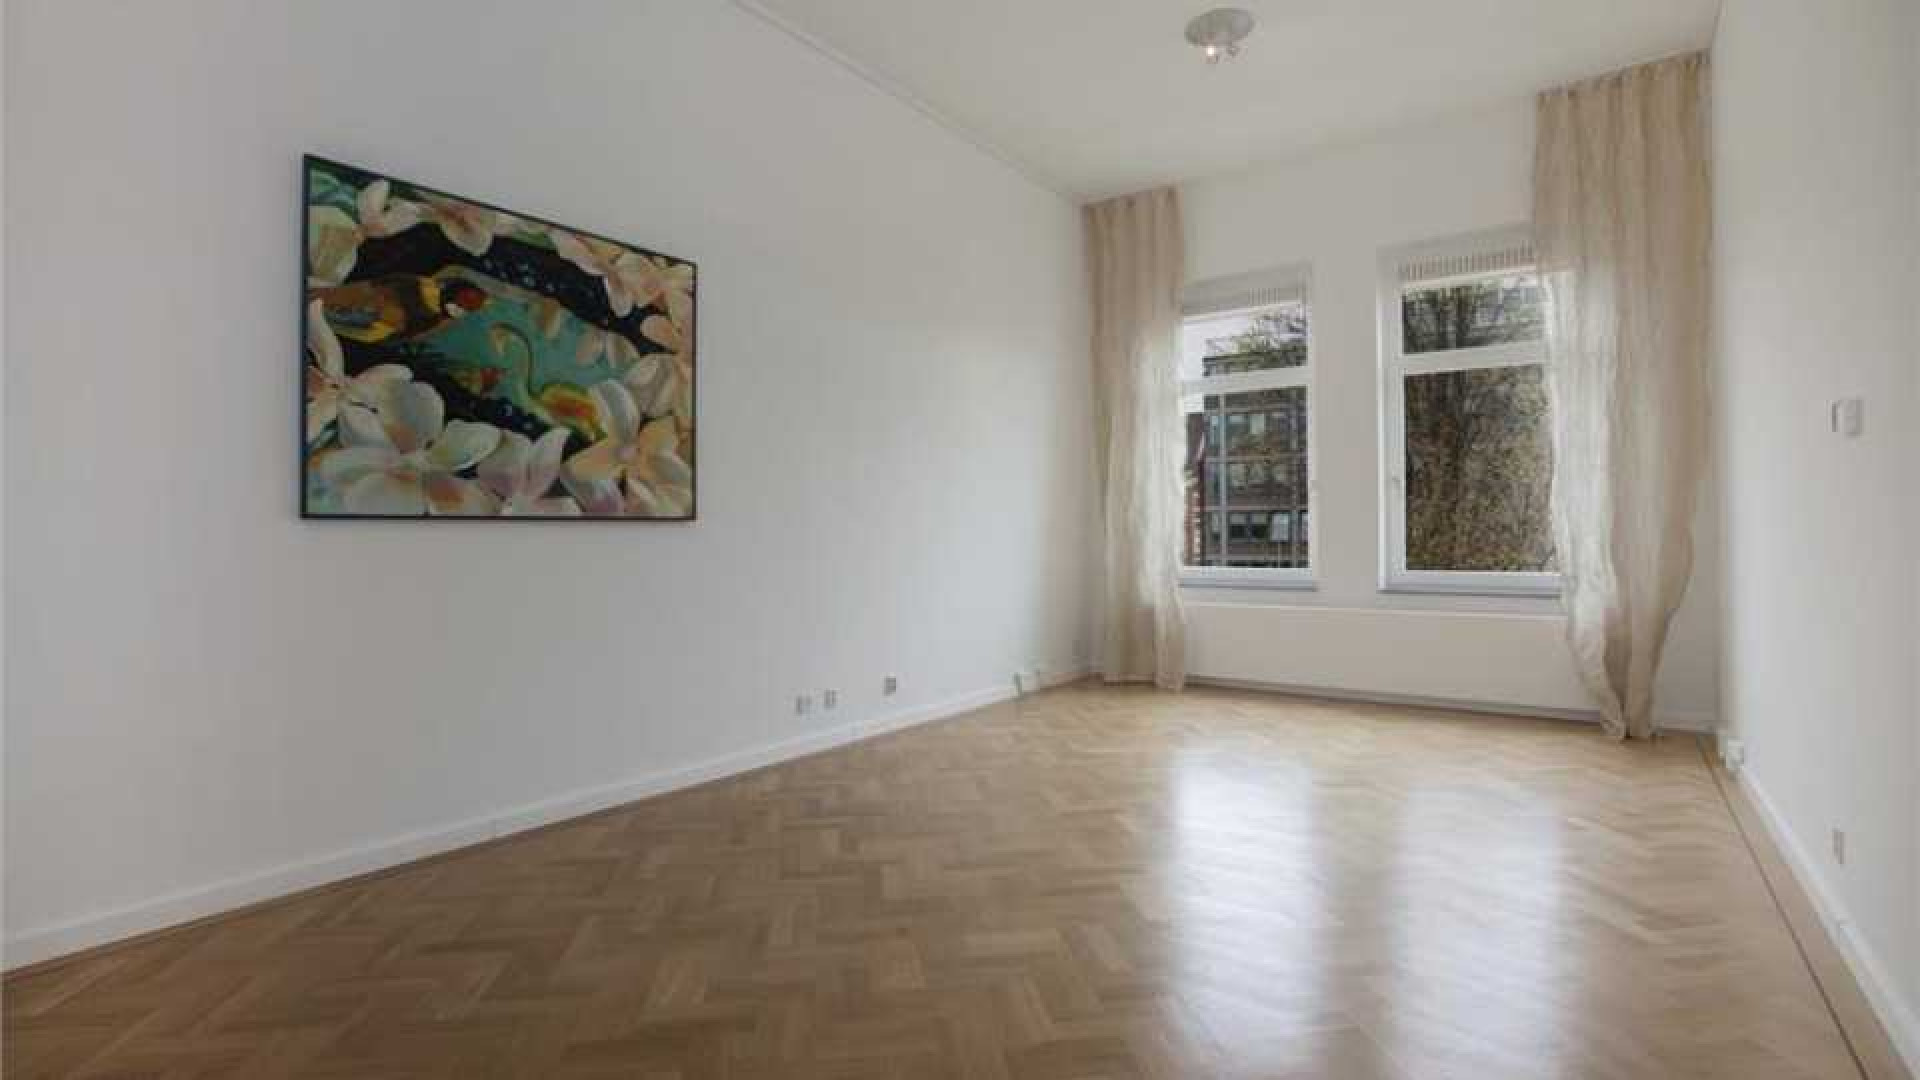 Jamai huurt luxe appartement in centrum van Amsterdam. Zie foto's